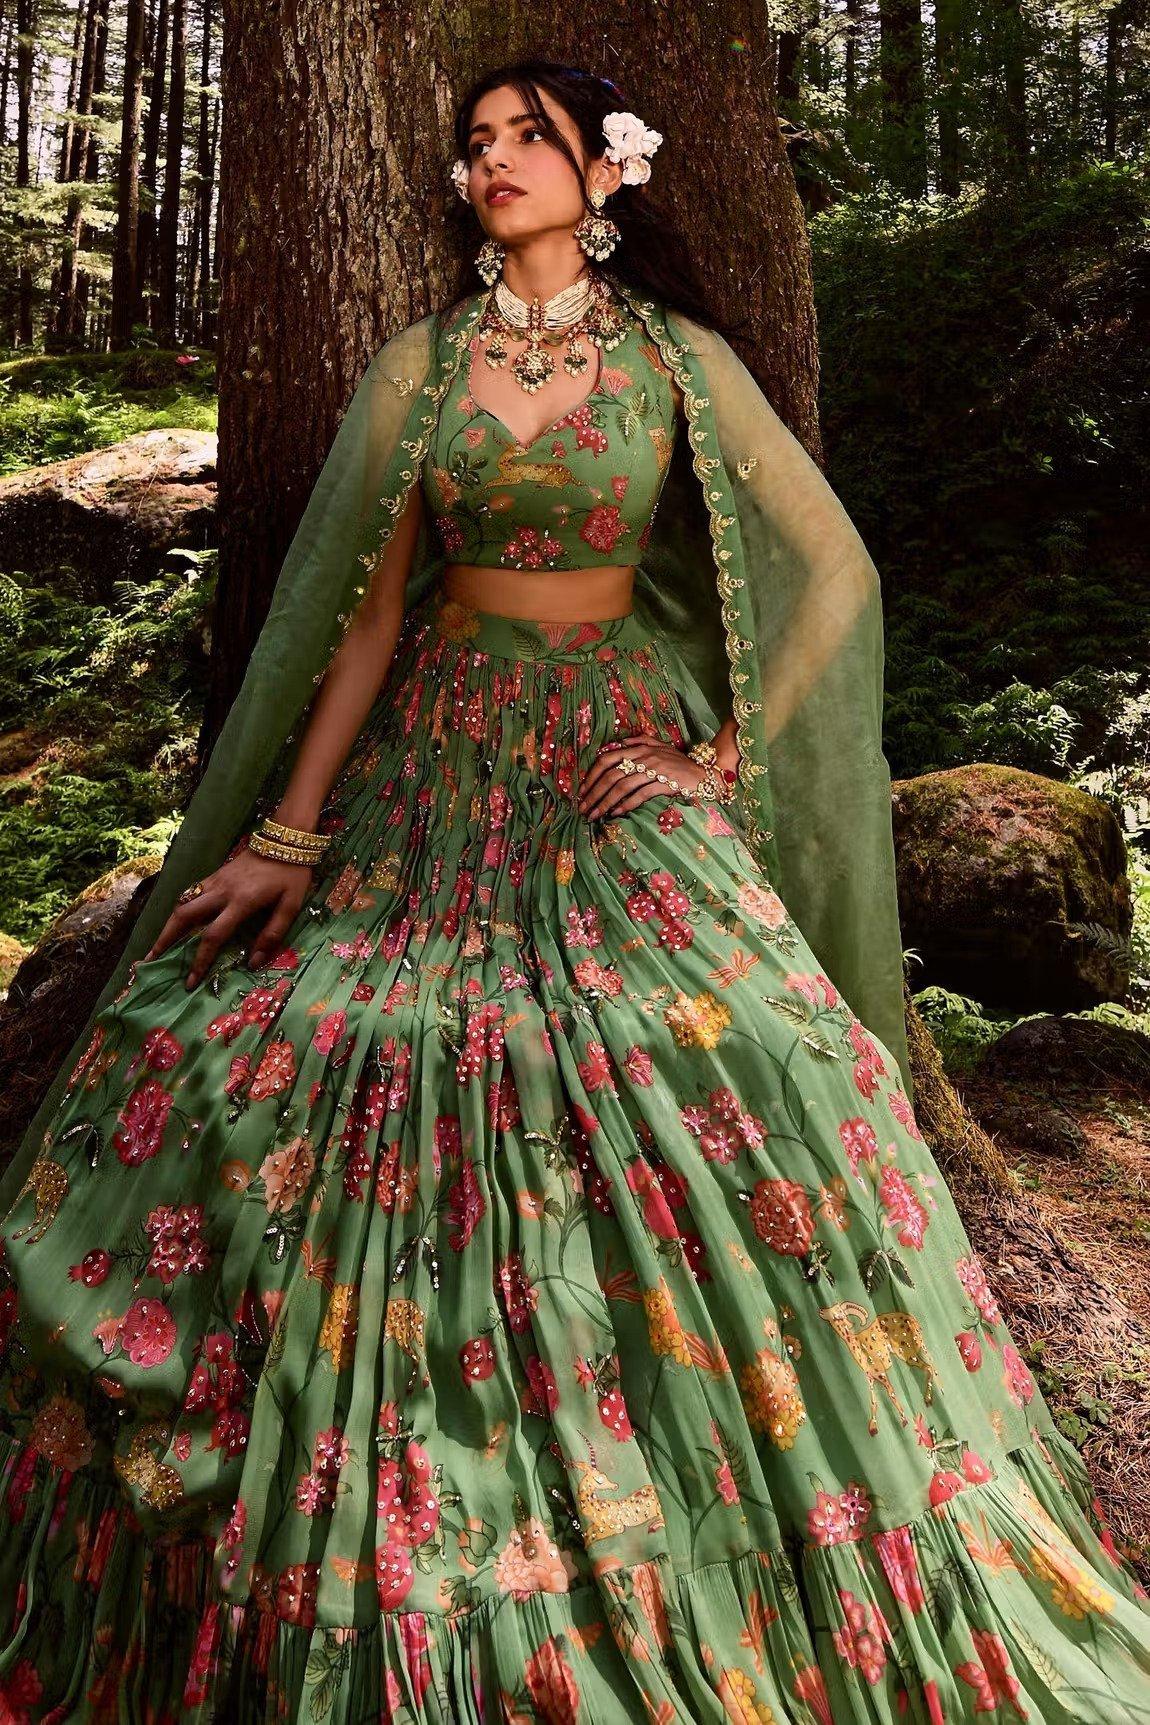 Bridal Blue Lehenga | Wedding Outfit Ideas | Bridal Inspiration | Blue  Lehenga | Indian wedding outfits, Party wear indian dresses, Latest bridal  lehenga